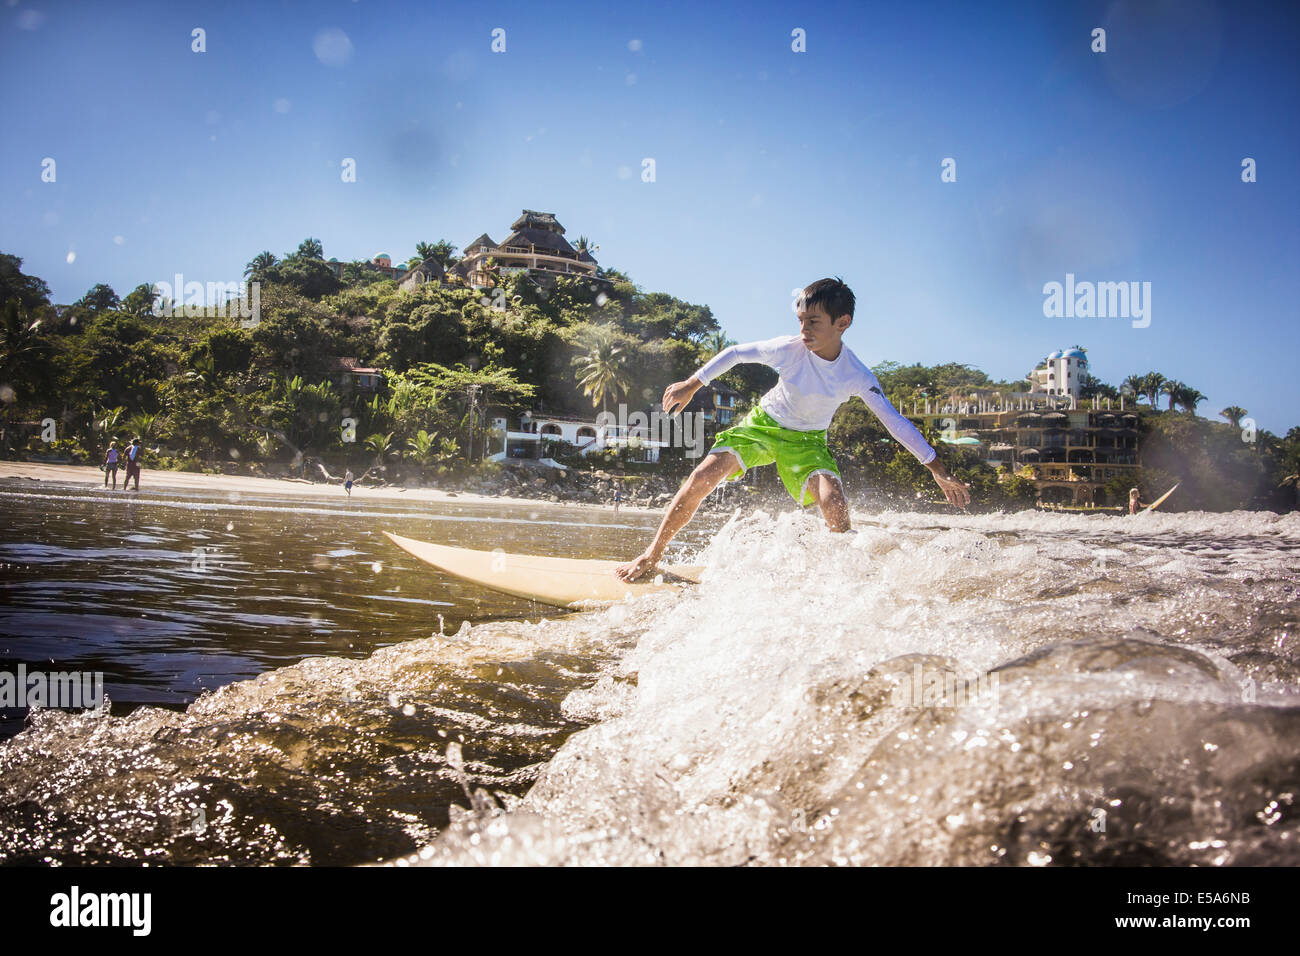 Chico de raza mixta en Ocean Surf Foto de stock